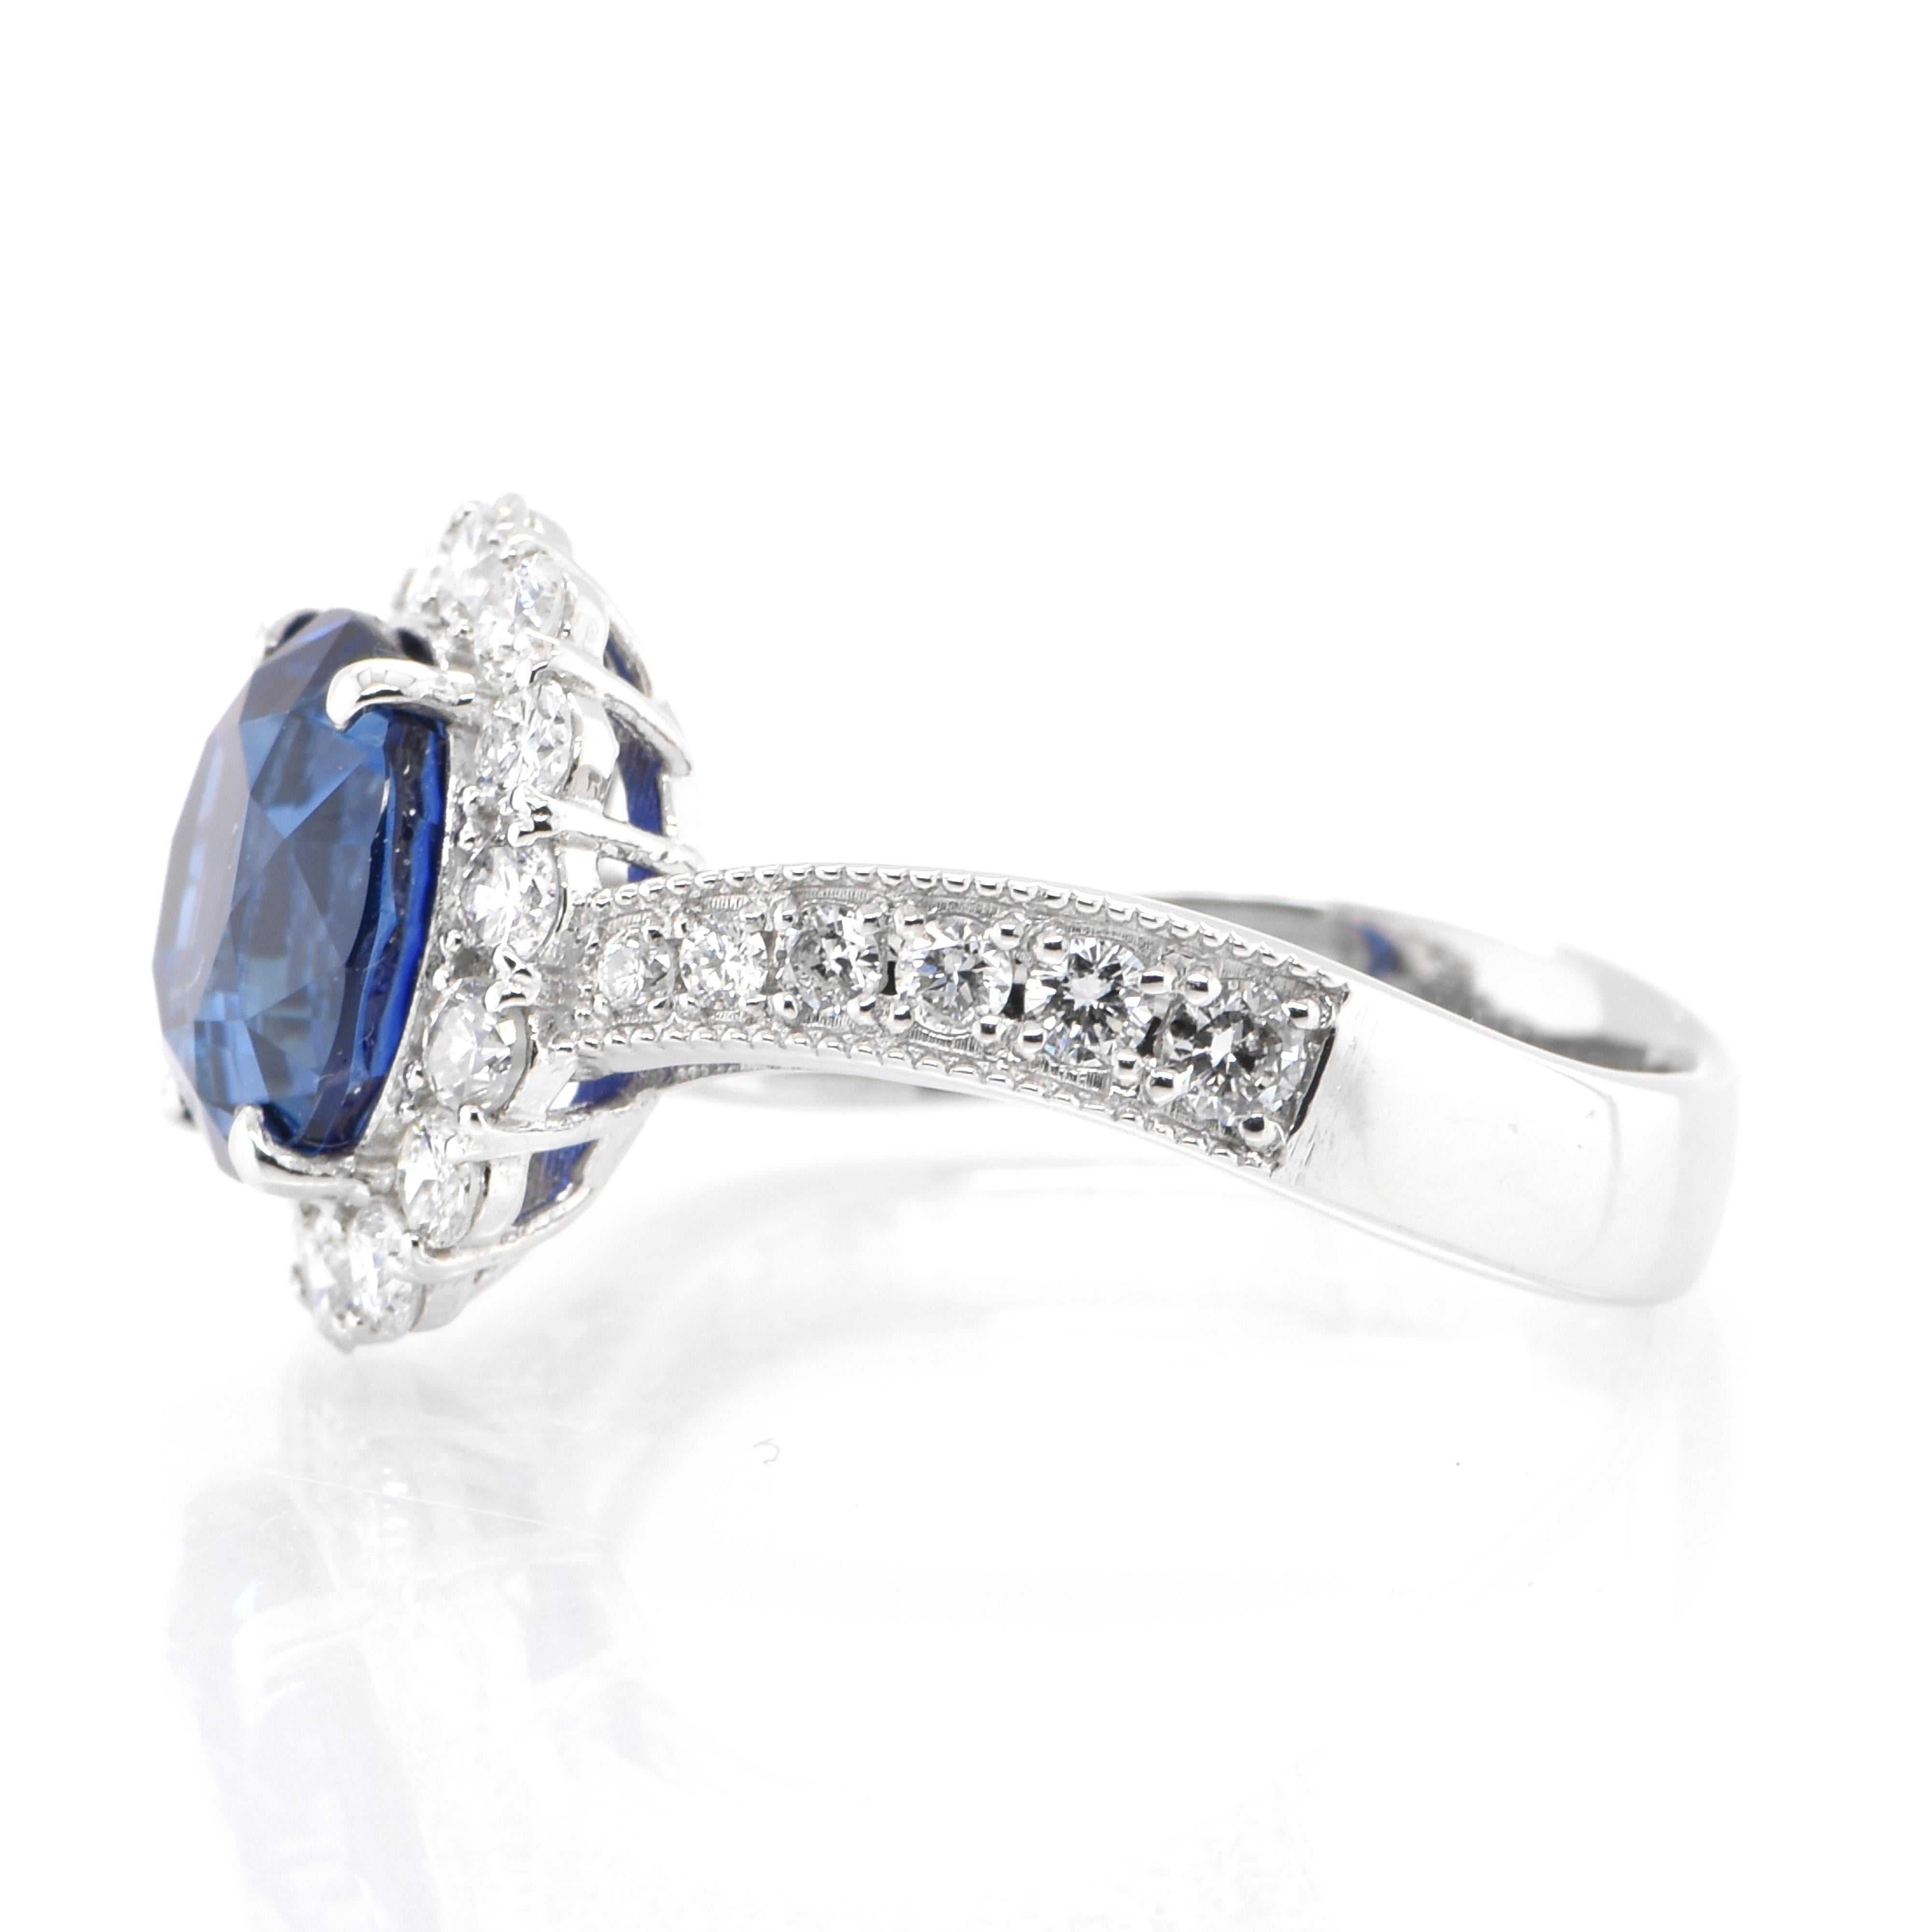 Modern Gia Certified 3.64 Carat Natural Royal Blue Ceylon Sapphire Ring Set in Platinum